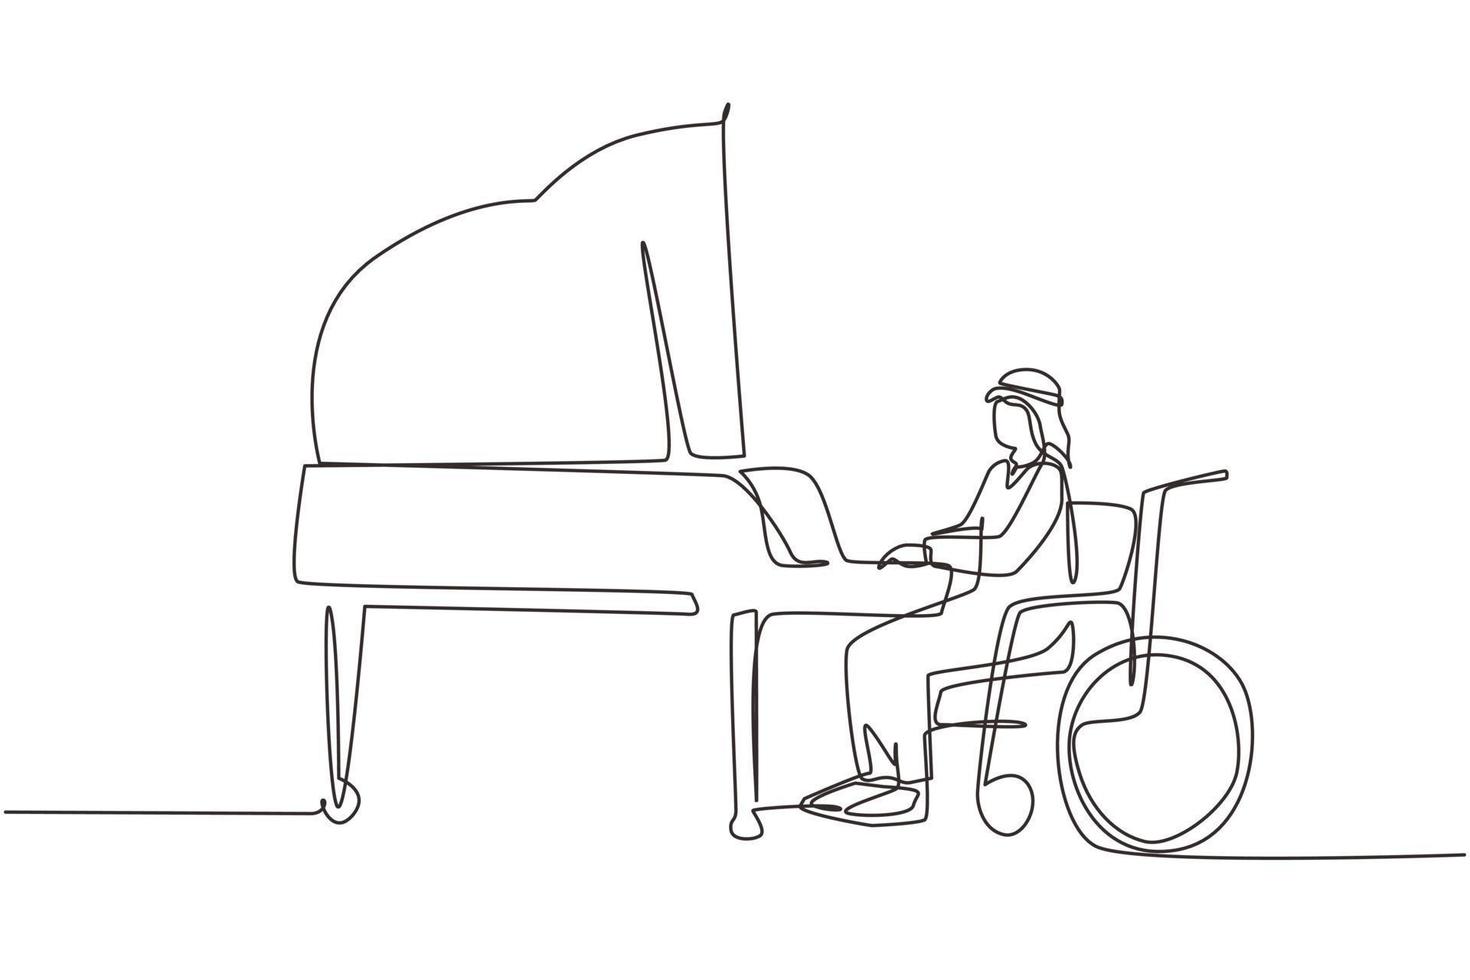 singolo disegno a tratteggio uomo arabo disabile in sedia a rotelle che suona il pianoforte in concerto. disabilità e musica classica. disabile fisico. paziente del centro di riabilitazione. vettore di disegno a linea continua